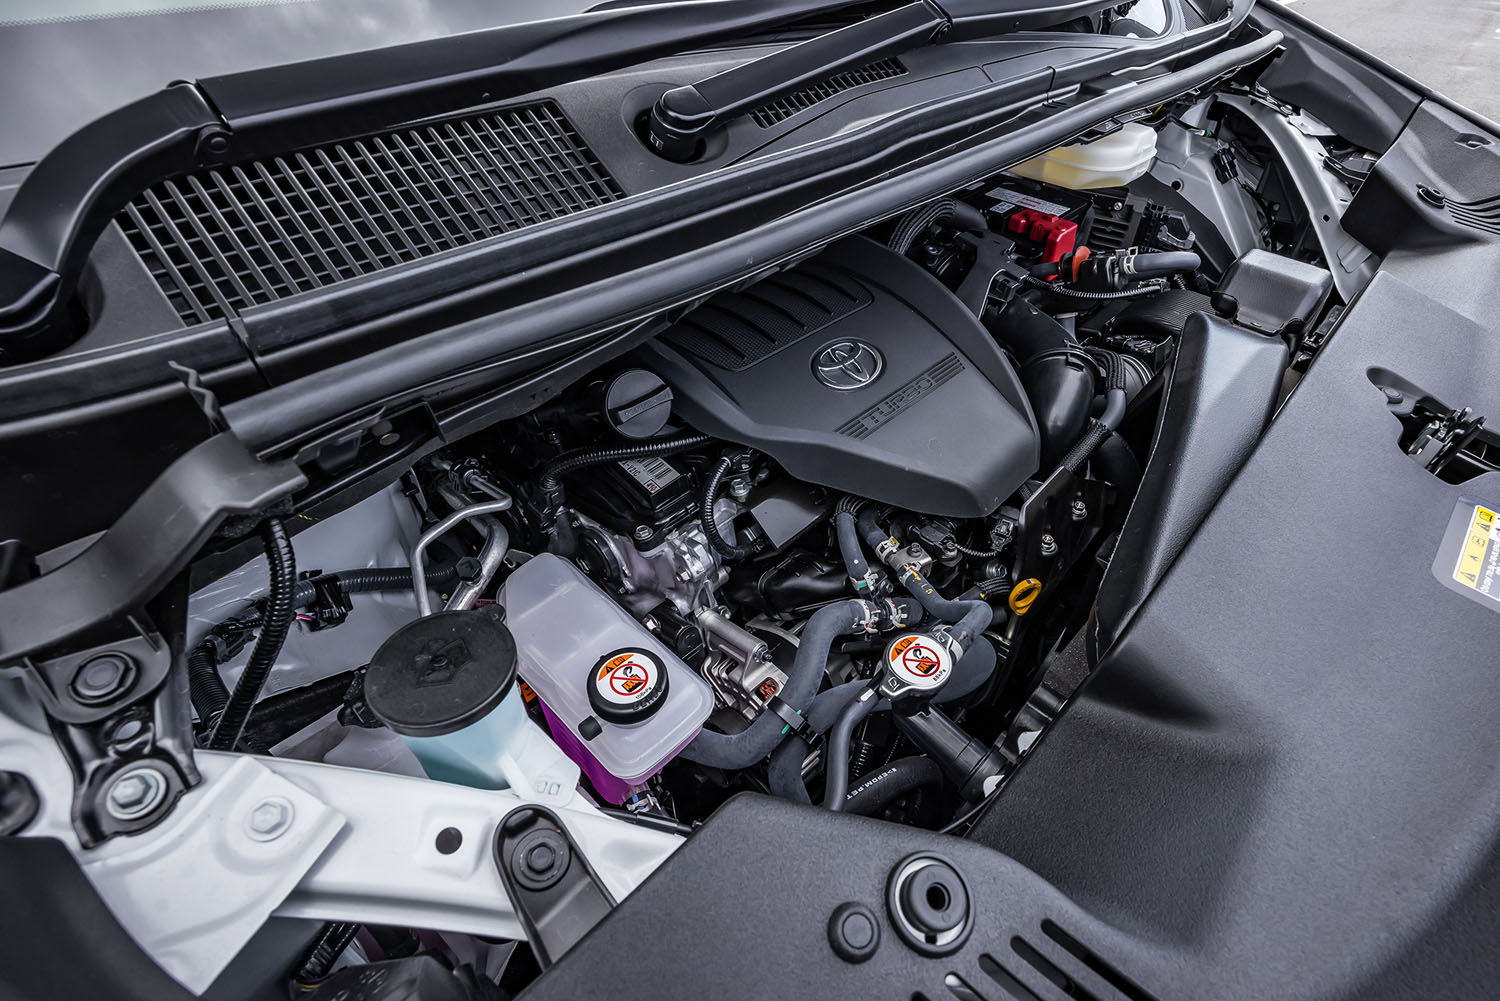 従来型の3.5リッターV6エンジンにかわる2.4リッター直4ターボエンジン「T24A-FTS」を、8段ATとの組み合わせで採用。最高出力279PS、最大トルク430N・mを発生する。ハイオクガソリン指定で、WLTCモード燃費値は10.3km/リッター。